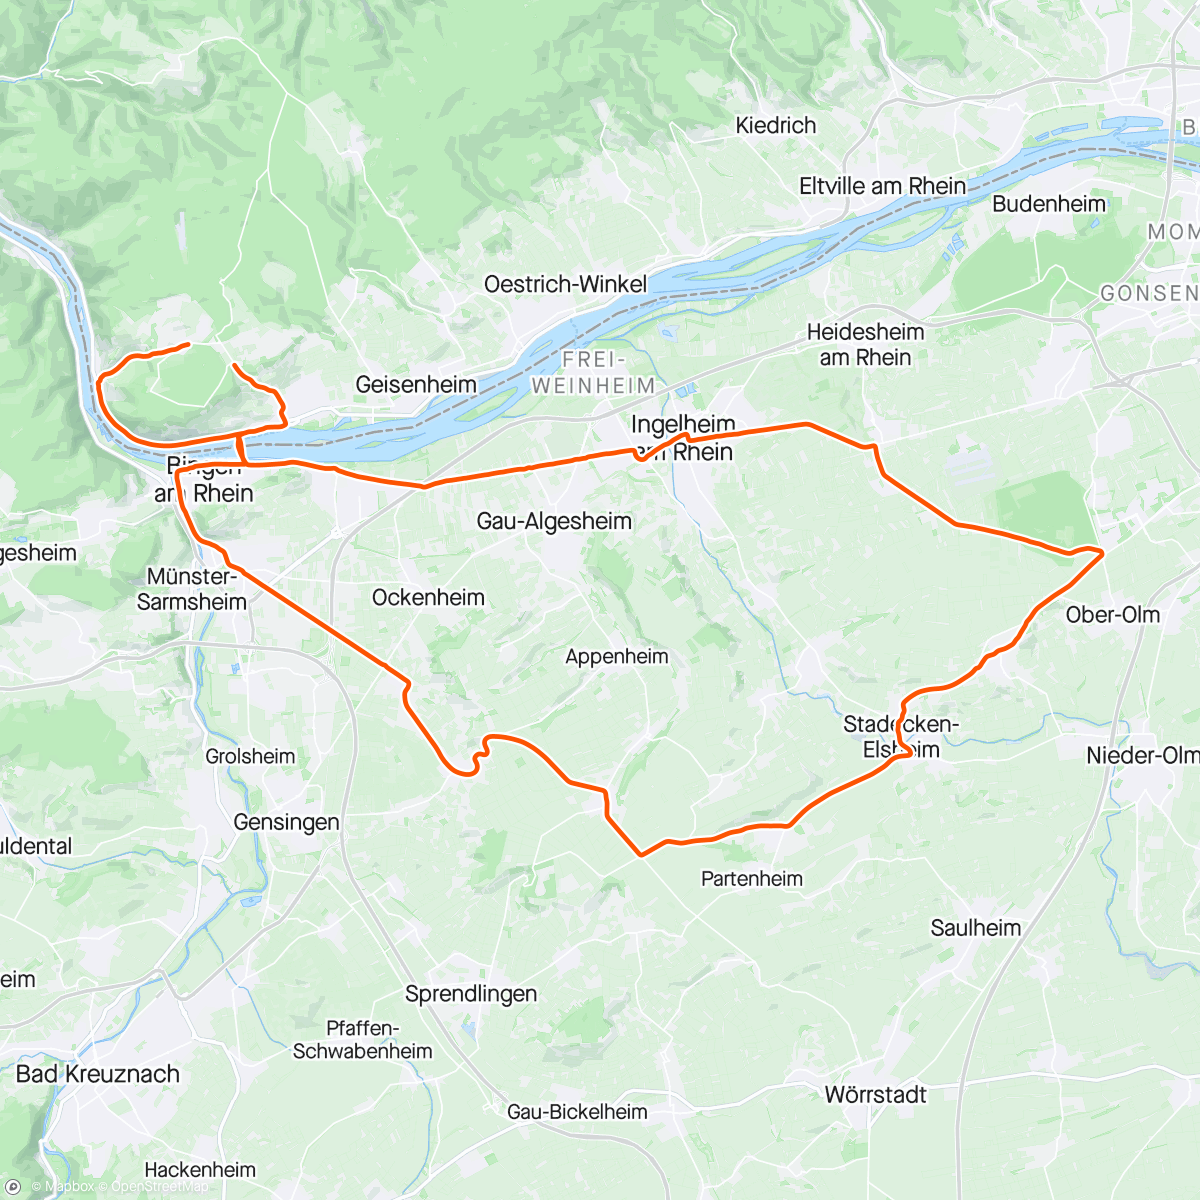 「Rheinhessen Runde」活動的地圖